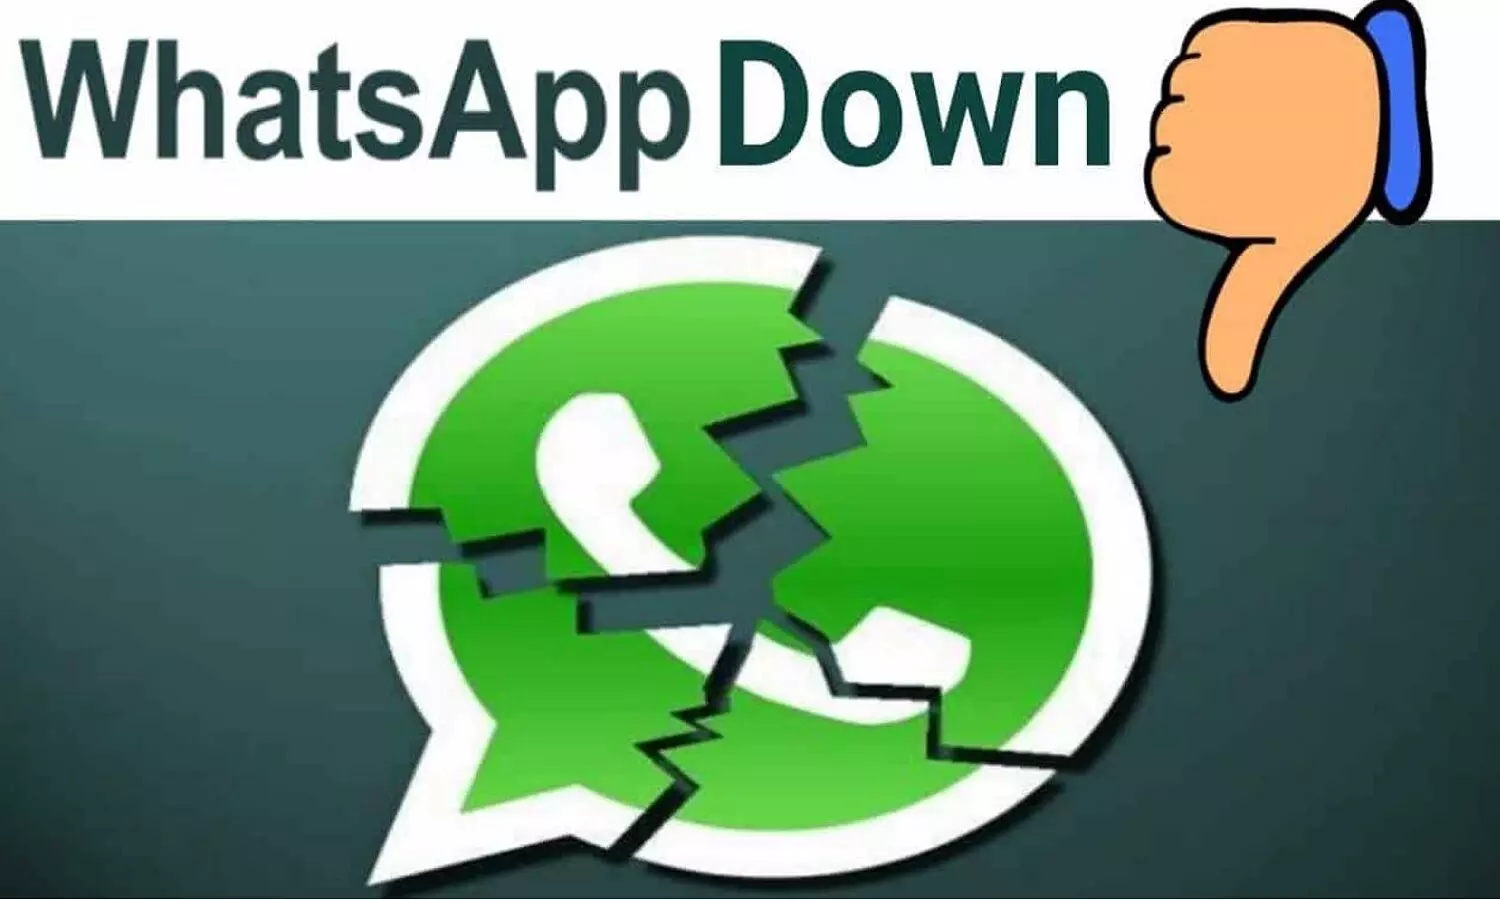 WhatsApp Down: दुनिया के कई देशों में व्हाट्सऐप डाउन, एमपी-यूपी सहित कई राज्यों के यूजर्स परेशान